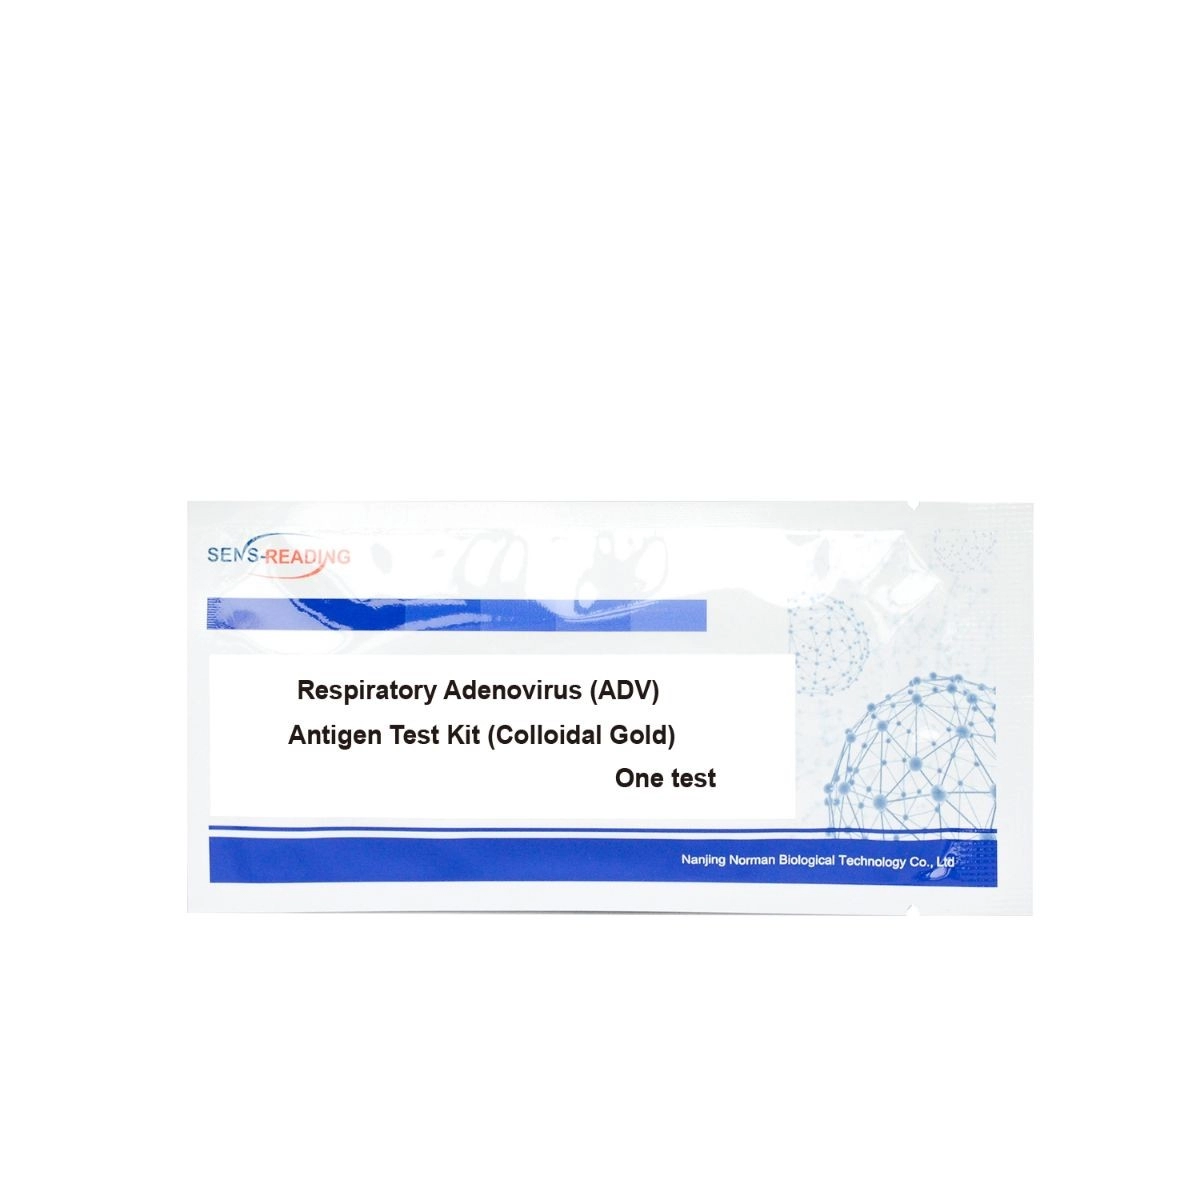 Respiratory Adenovirus (ADV) Antigen-Testkit